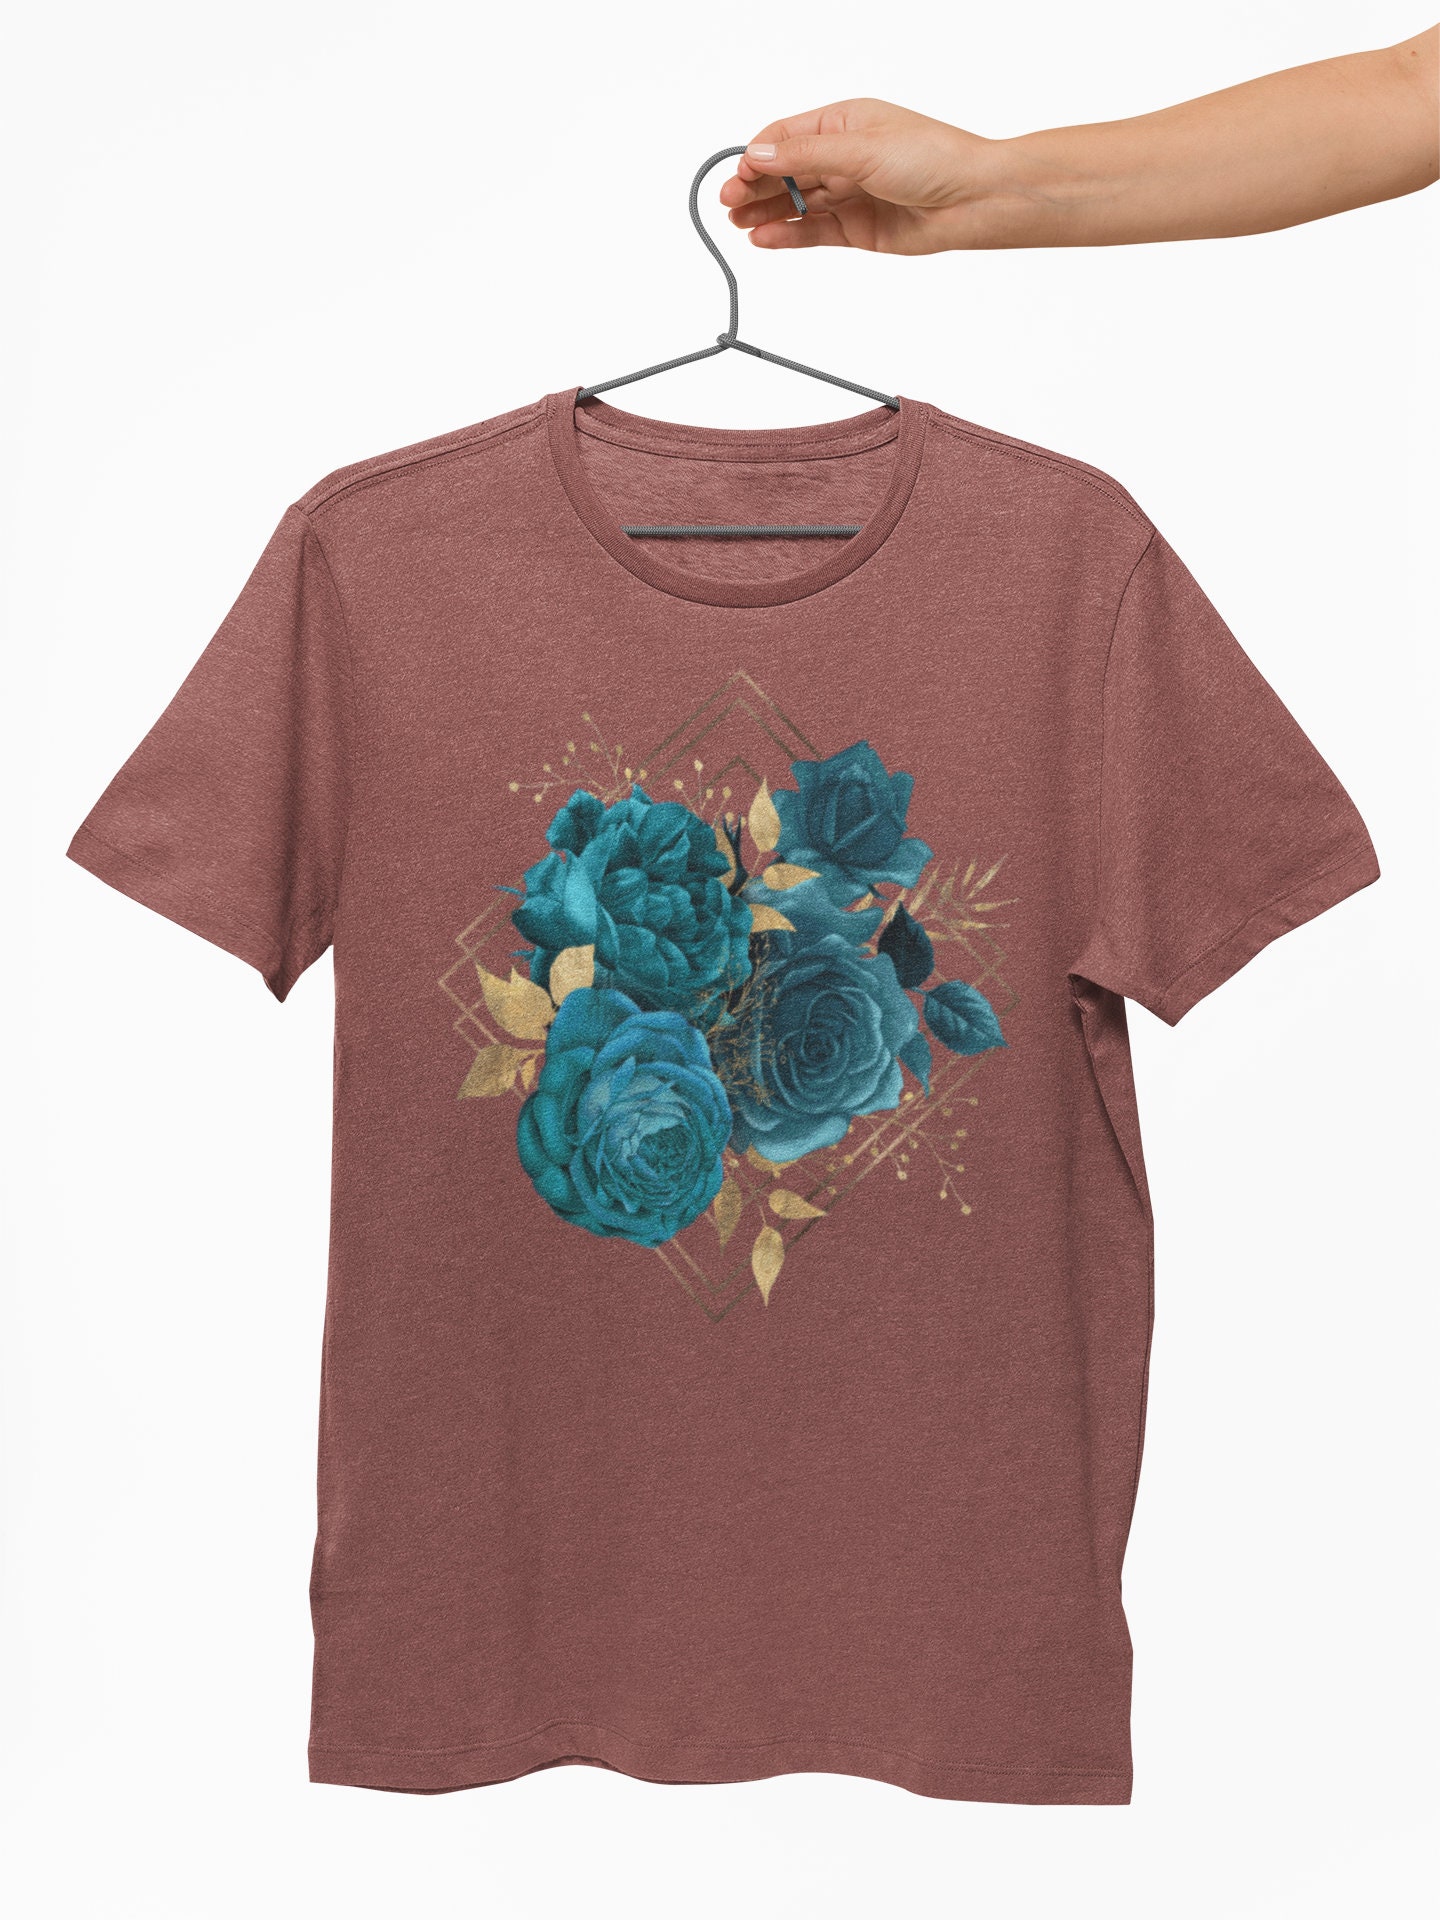 Blue Botanical Shirt Bohemian Flower Tee Aesthetic Clothing | Etsy